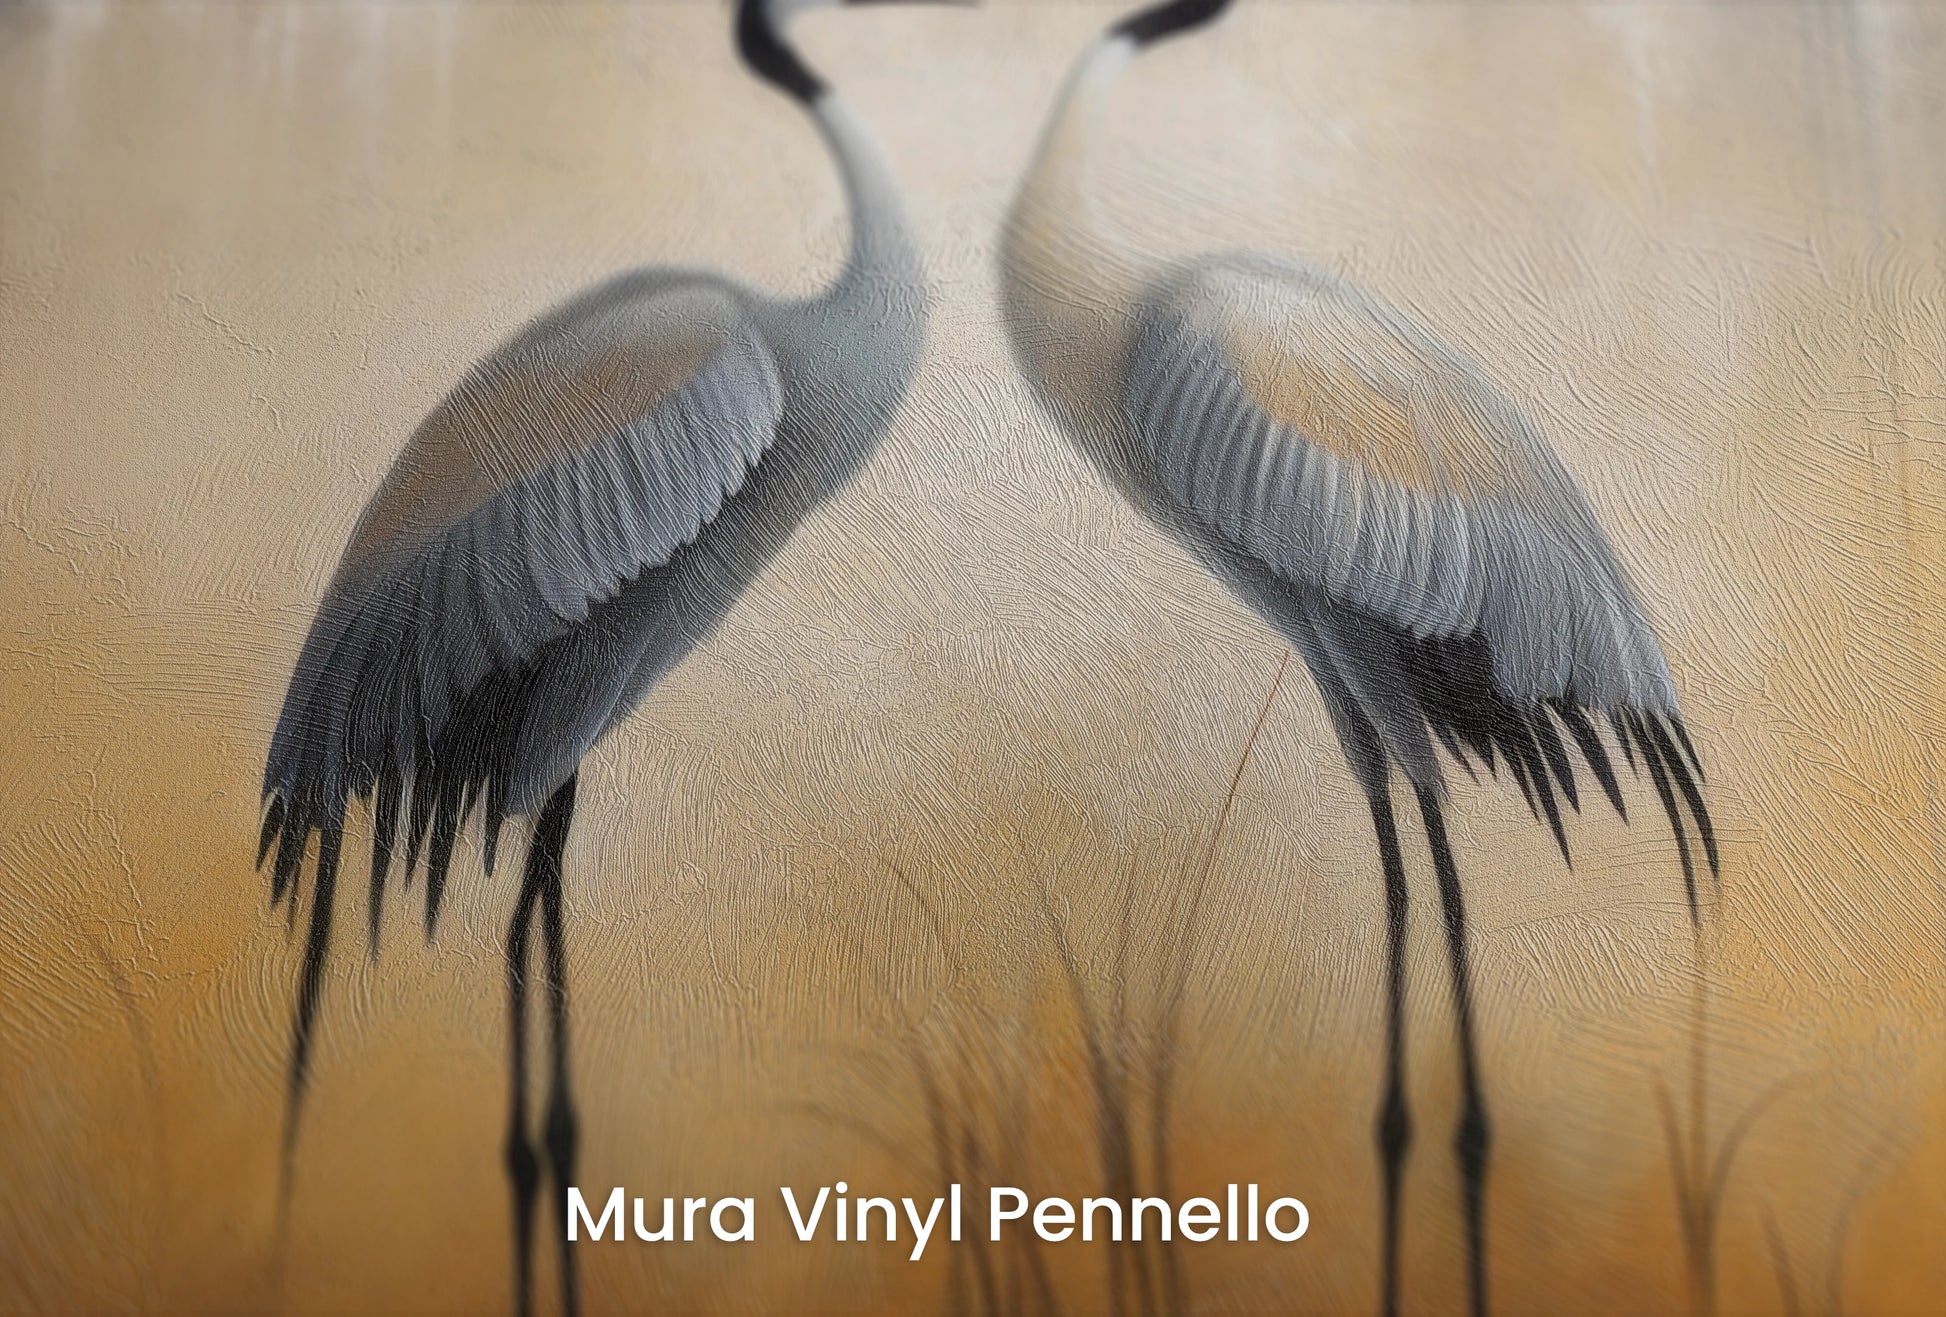 Zbliżenie na artystyczną fototapetę o nazwie Misty Dawn #2 na podłożu Mura Vinyl Pennello - faktura pociągnięć pędzla malarskiego.